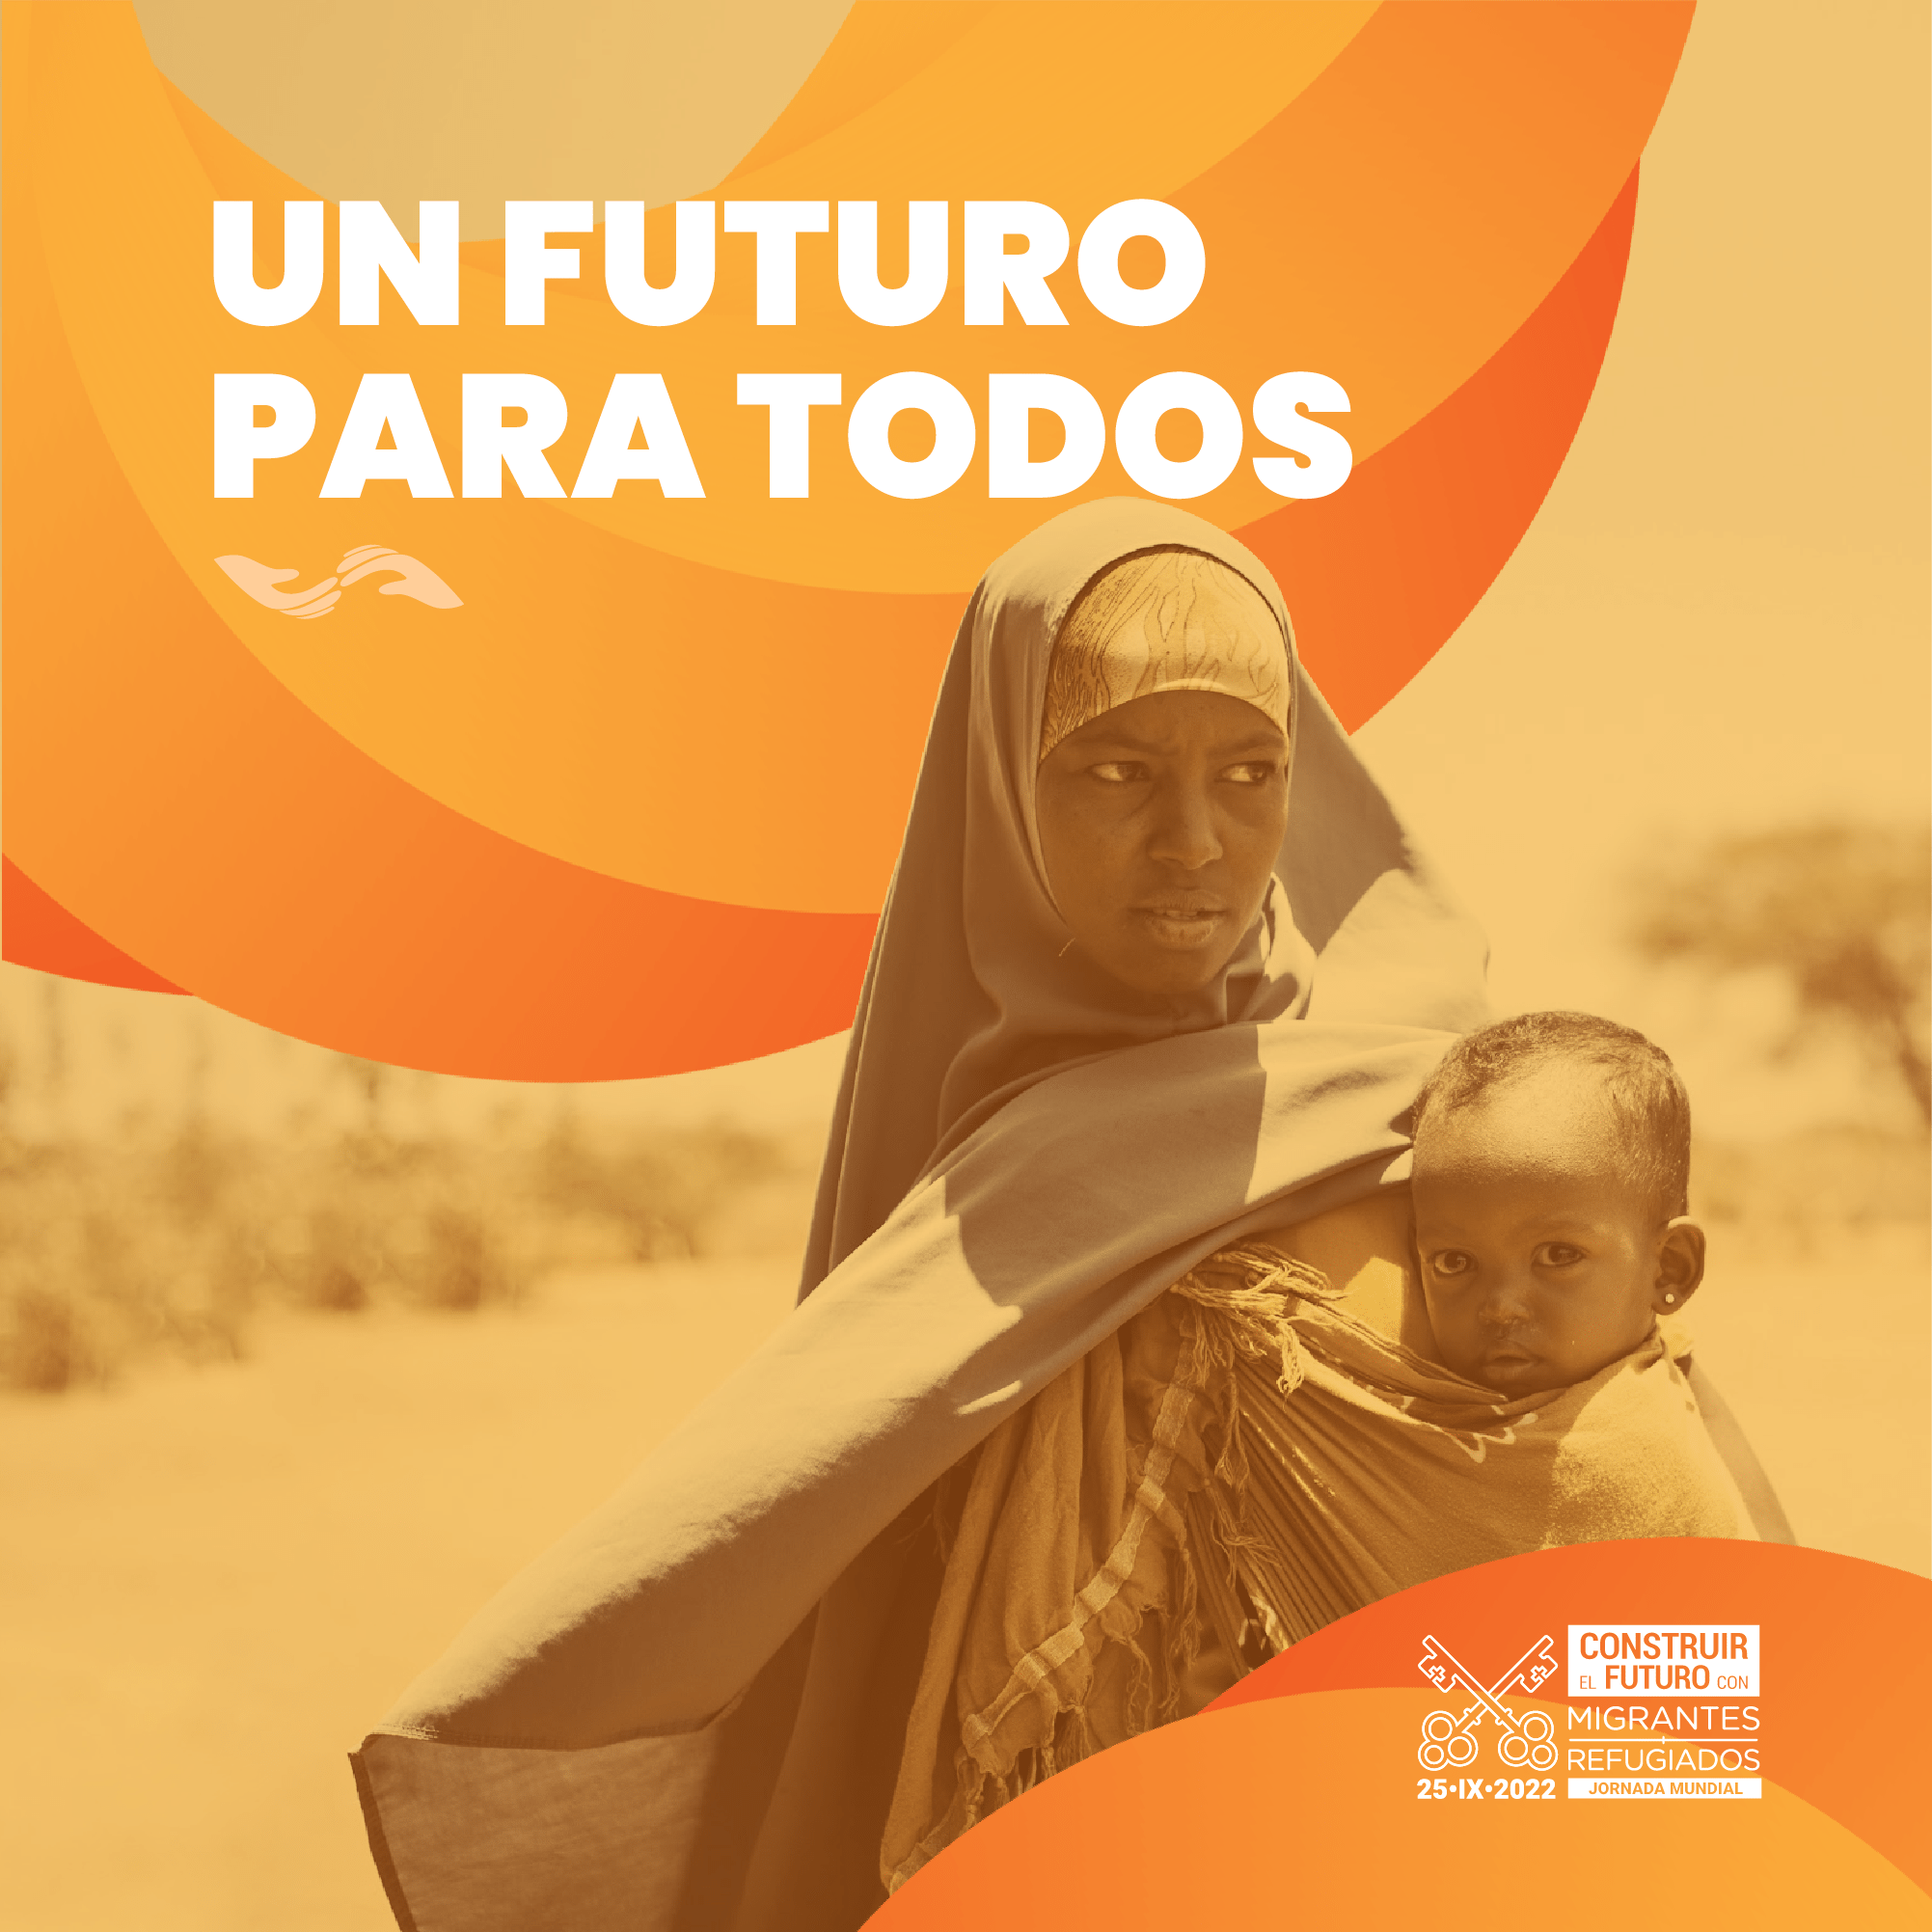 Jornada Mundial del Migrante y el Regugiado. Materiales tema 2: "Un futuro para todos: poner en el centro a los más vulnerables". TEMA.